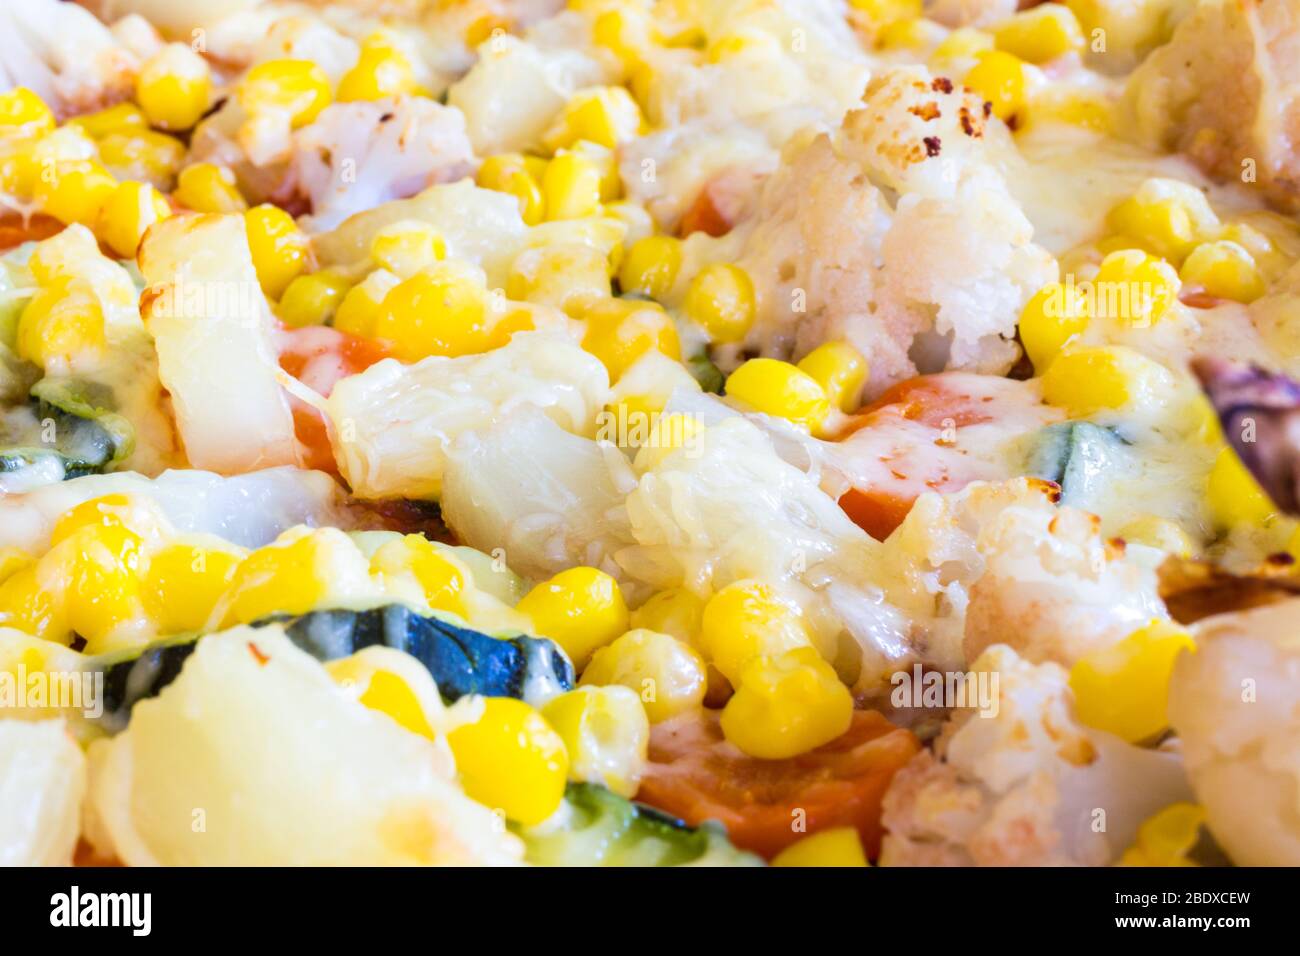 Close-up of homemade vegetarian veggie pizza with cheese, pineapple, corn, vegetables, zucchini, cauliflower Stock Photo